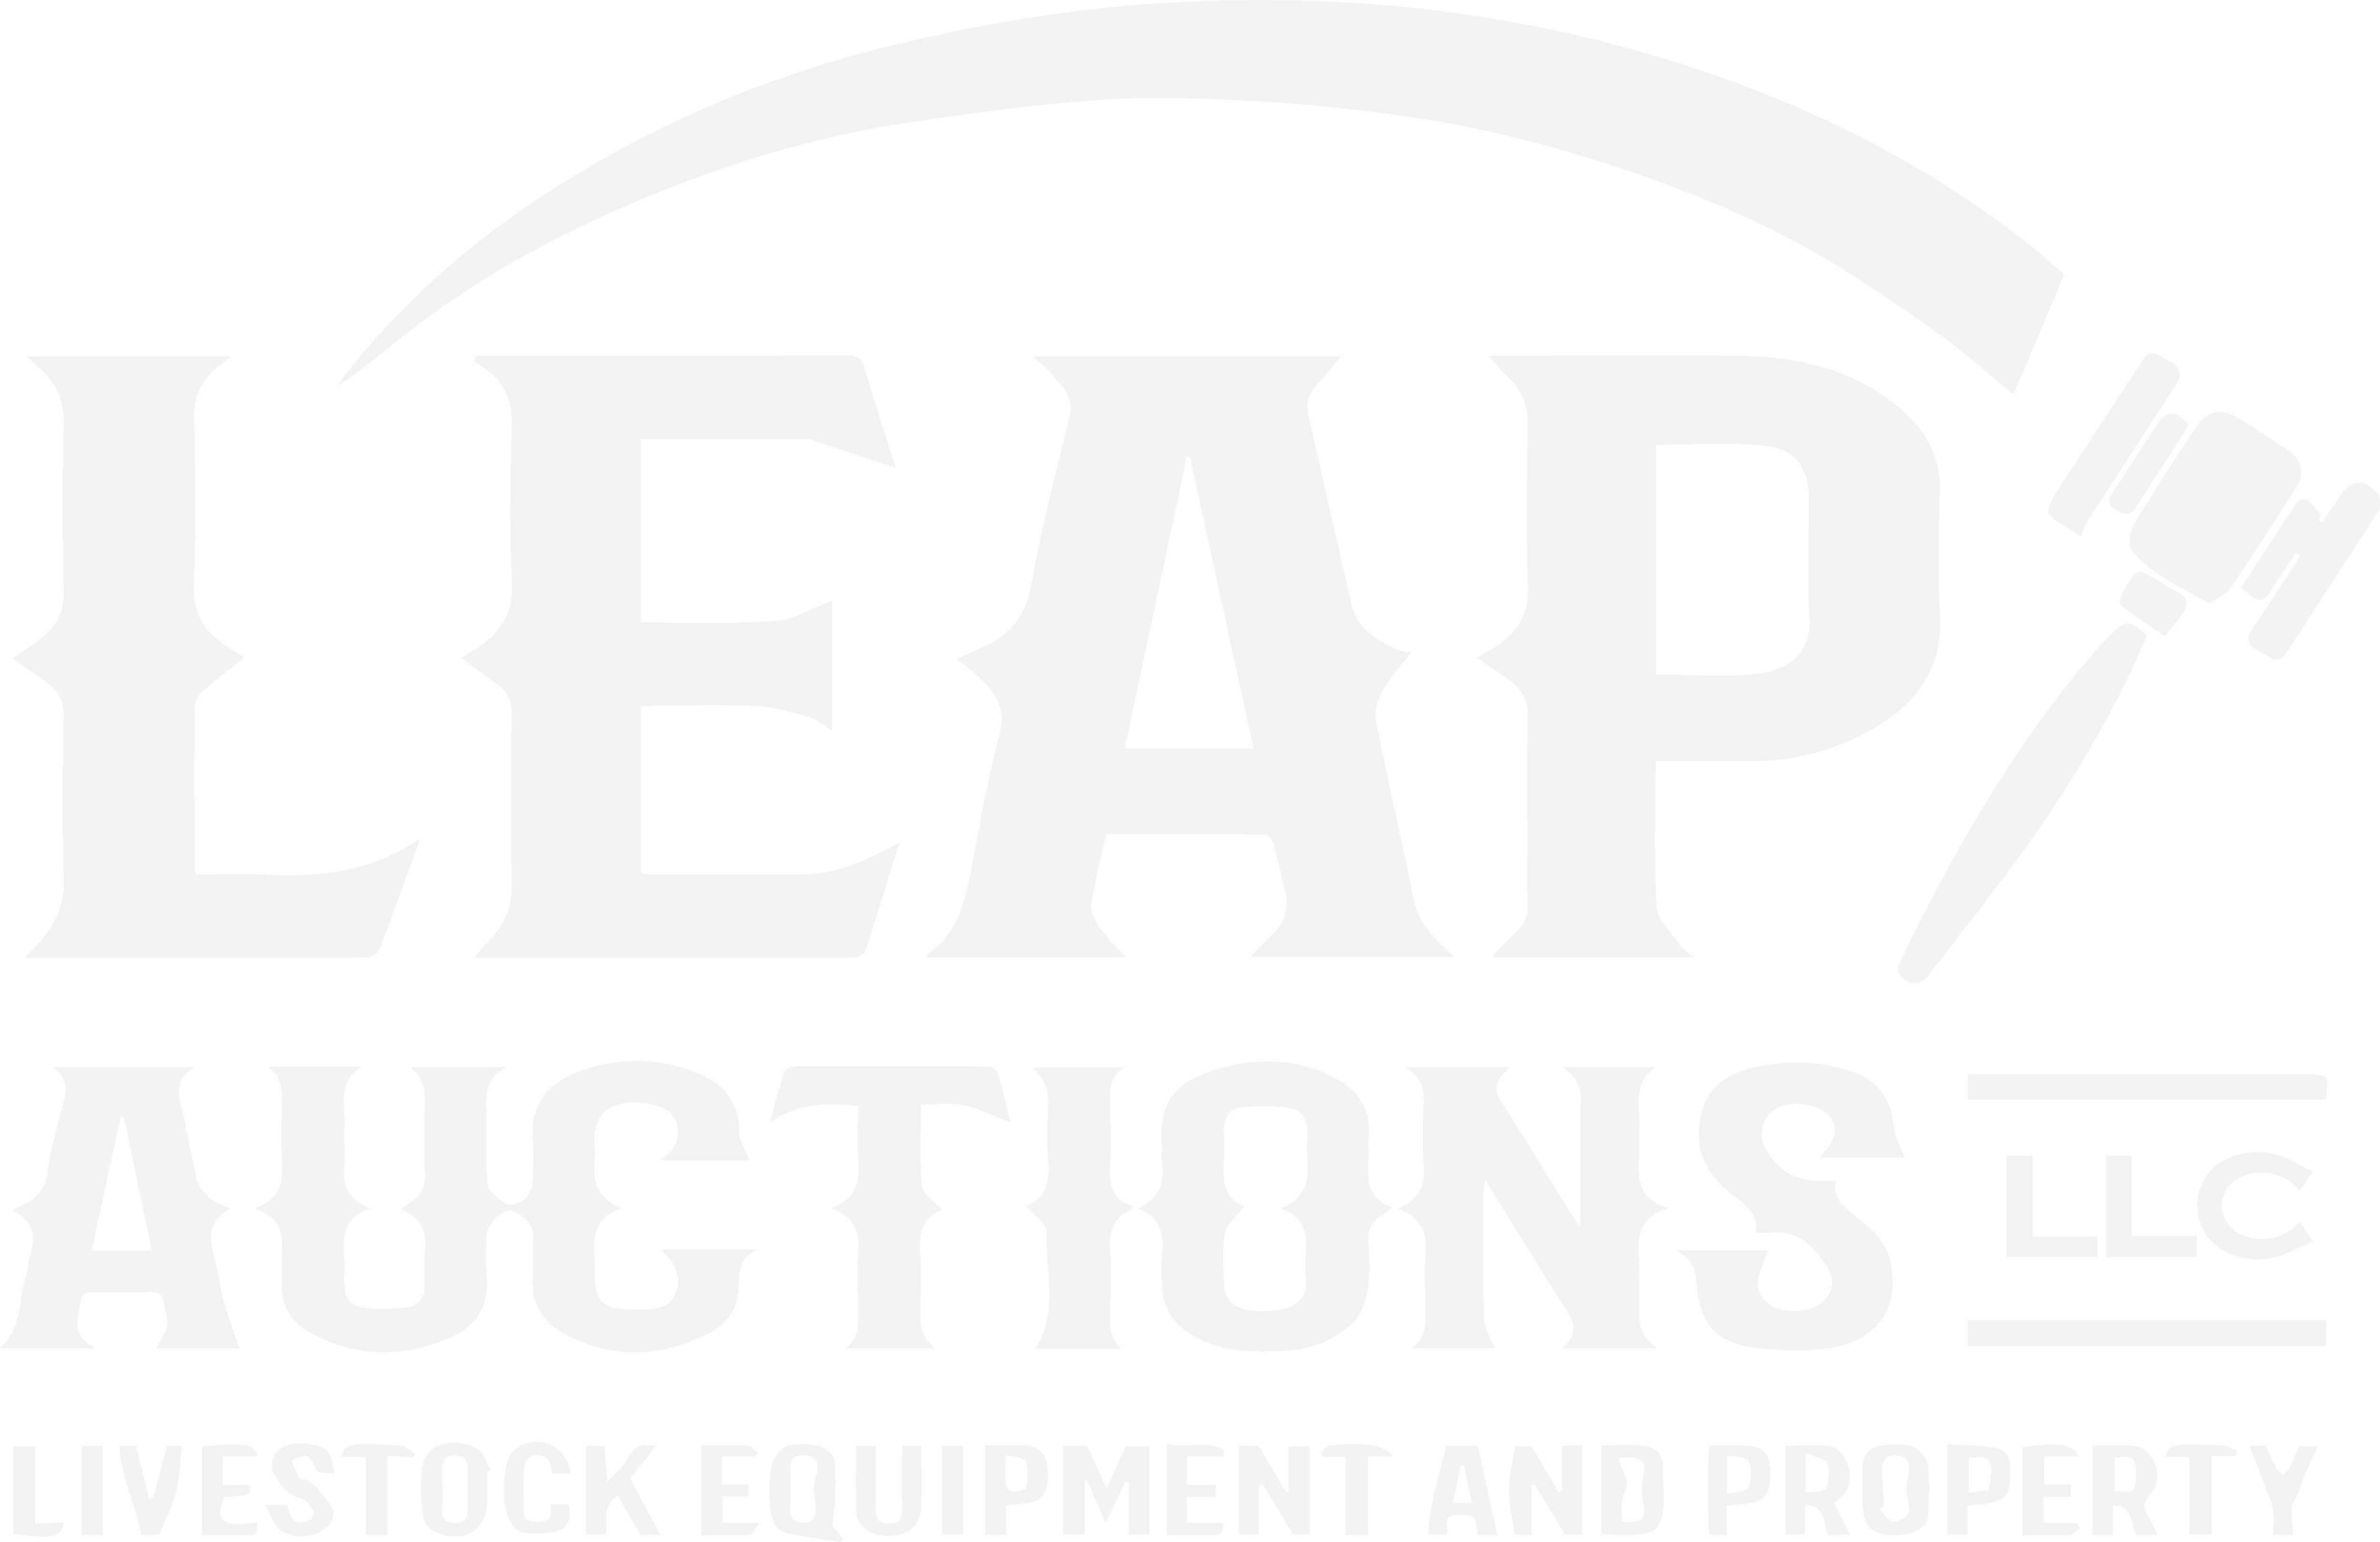 Leap Auctions, LLC